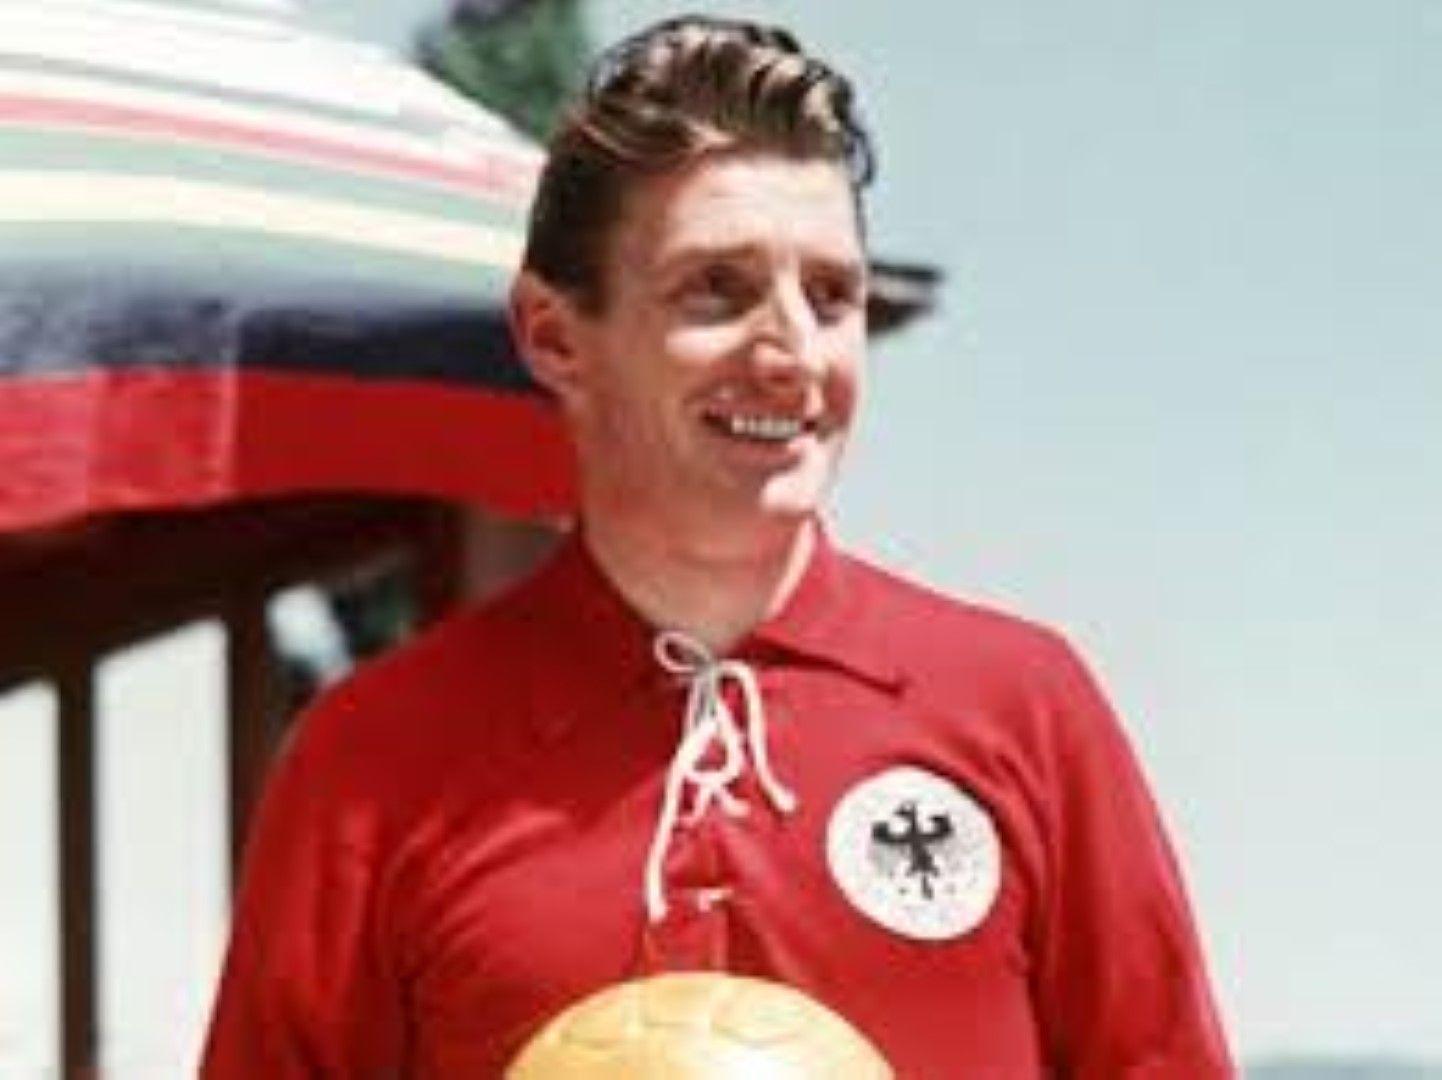 18, Името на Фридрих Валтер е символно за германския футбол. Фриц Валтер, както е известен, е лидерът на отбора,  спечелил сензационно световната титла през 1954 г. под носа на непобедимите унгарци. Бележи общо 539 гола в кариерата си, която минава изцяло и само в Кайзерслаутерн.